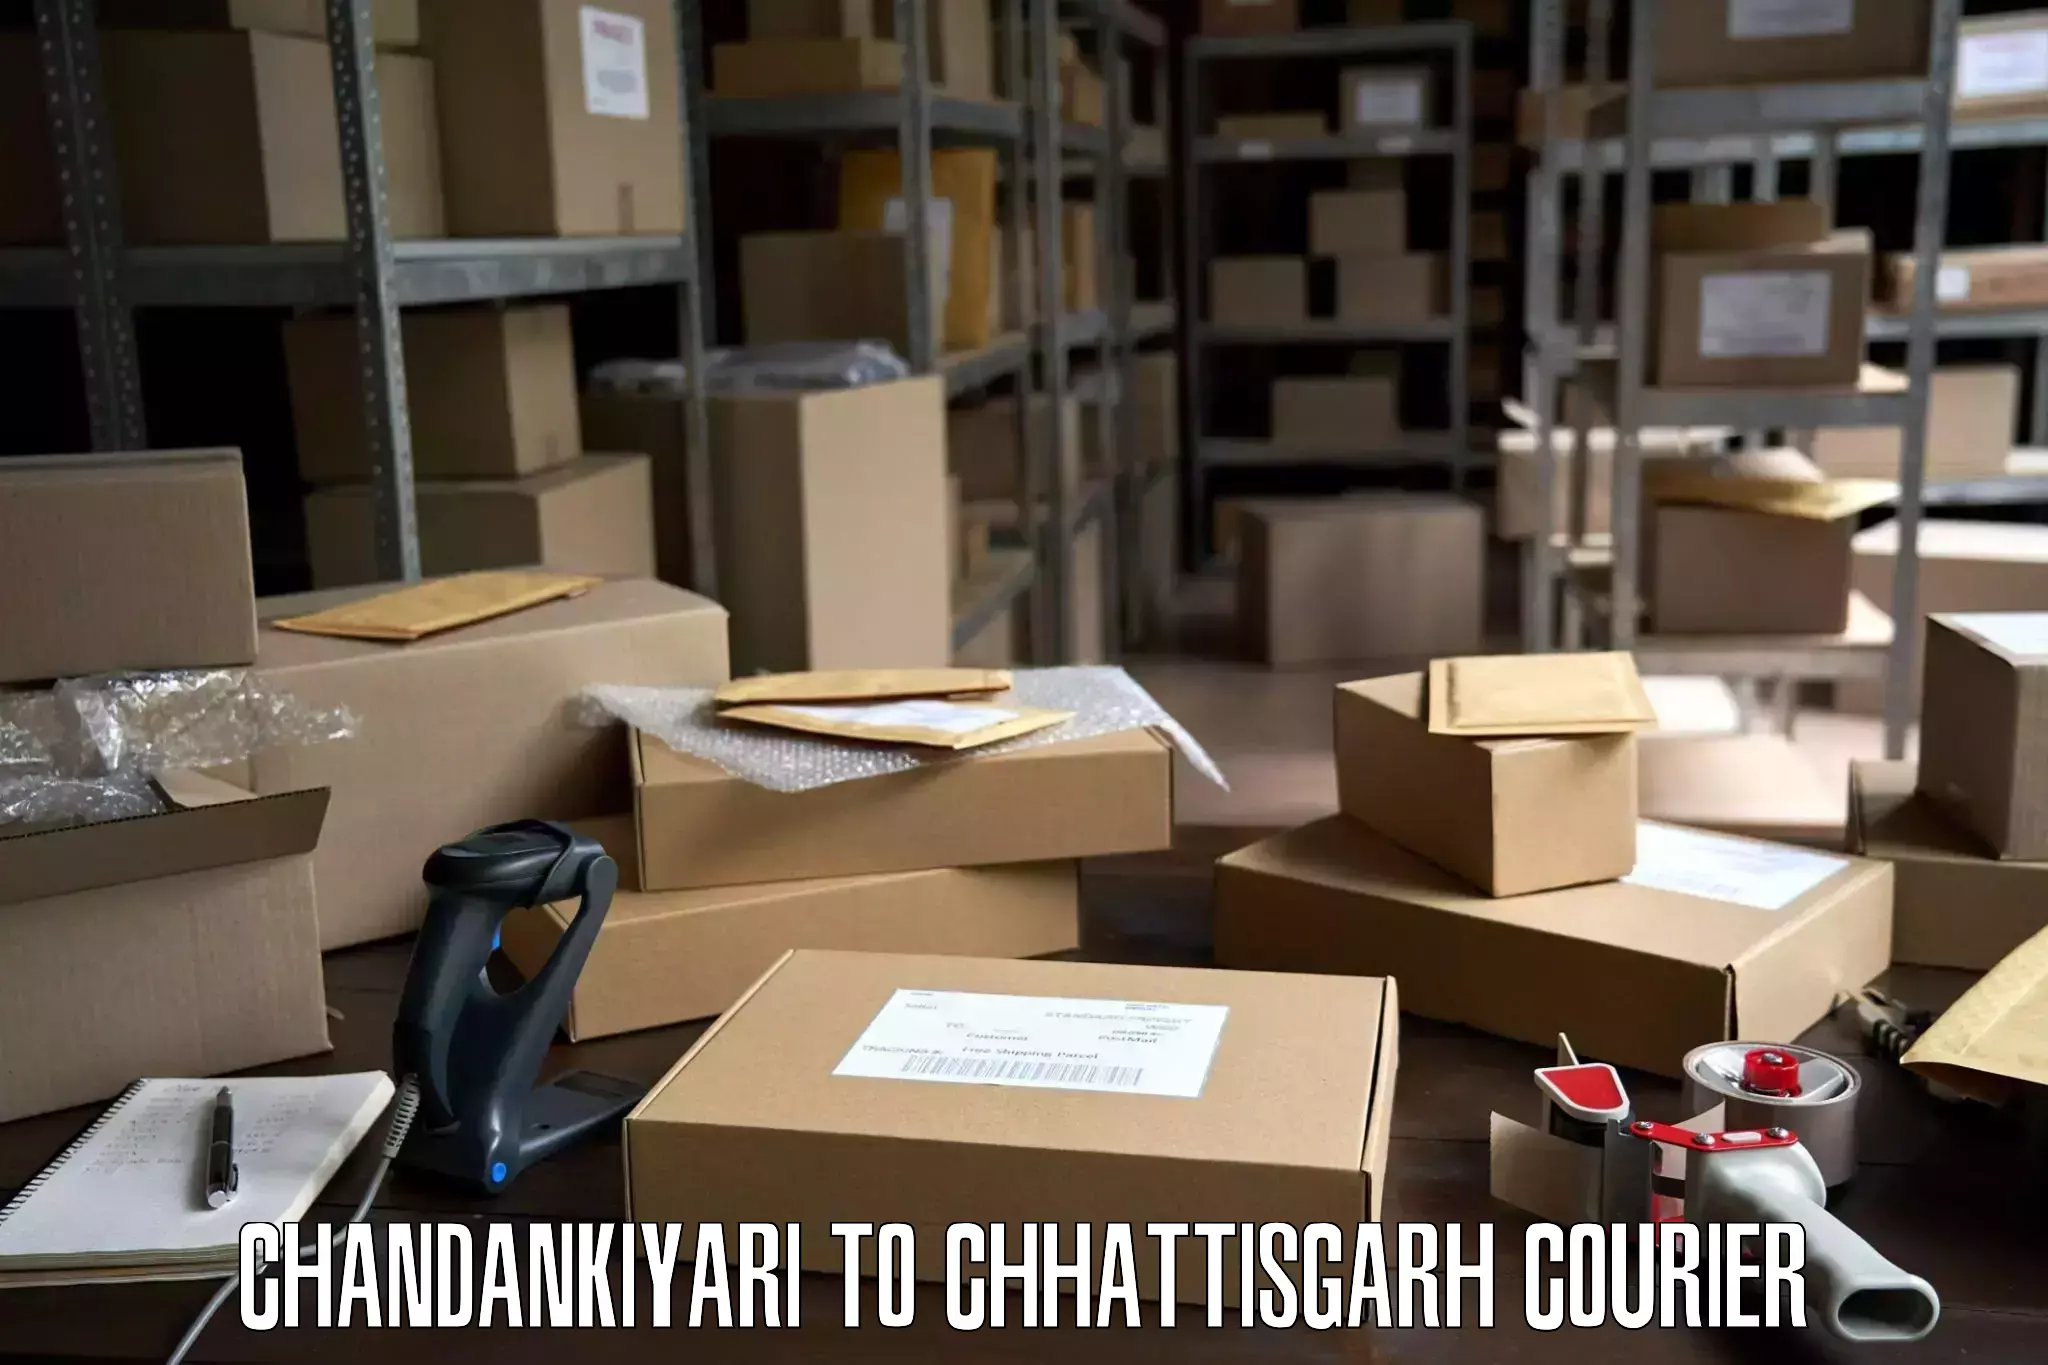 Professional movers and packers Chandankiyari to Bijapur Chhattisgarh